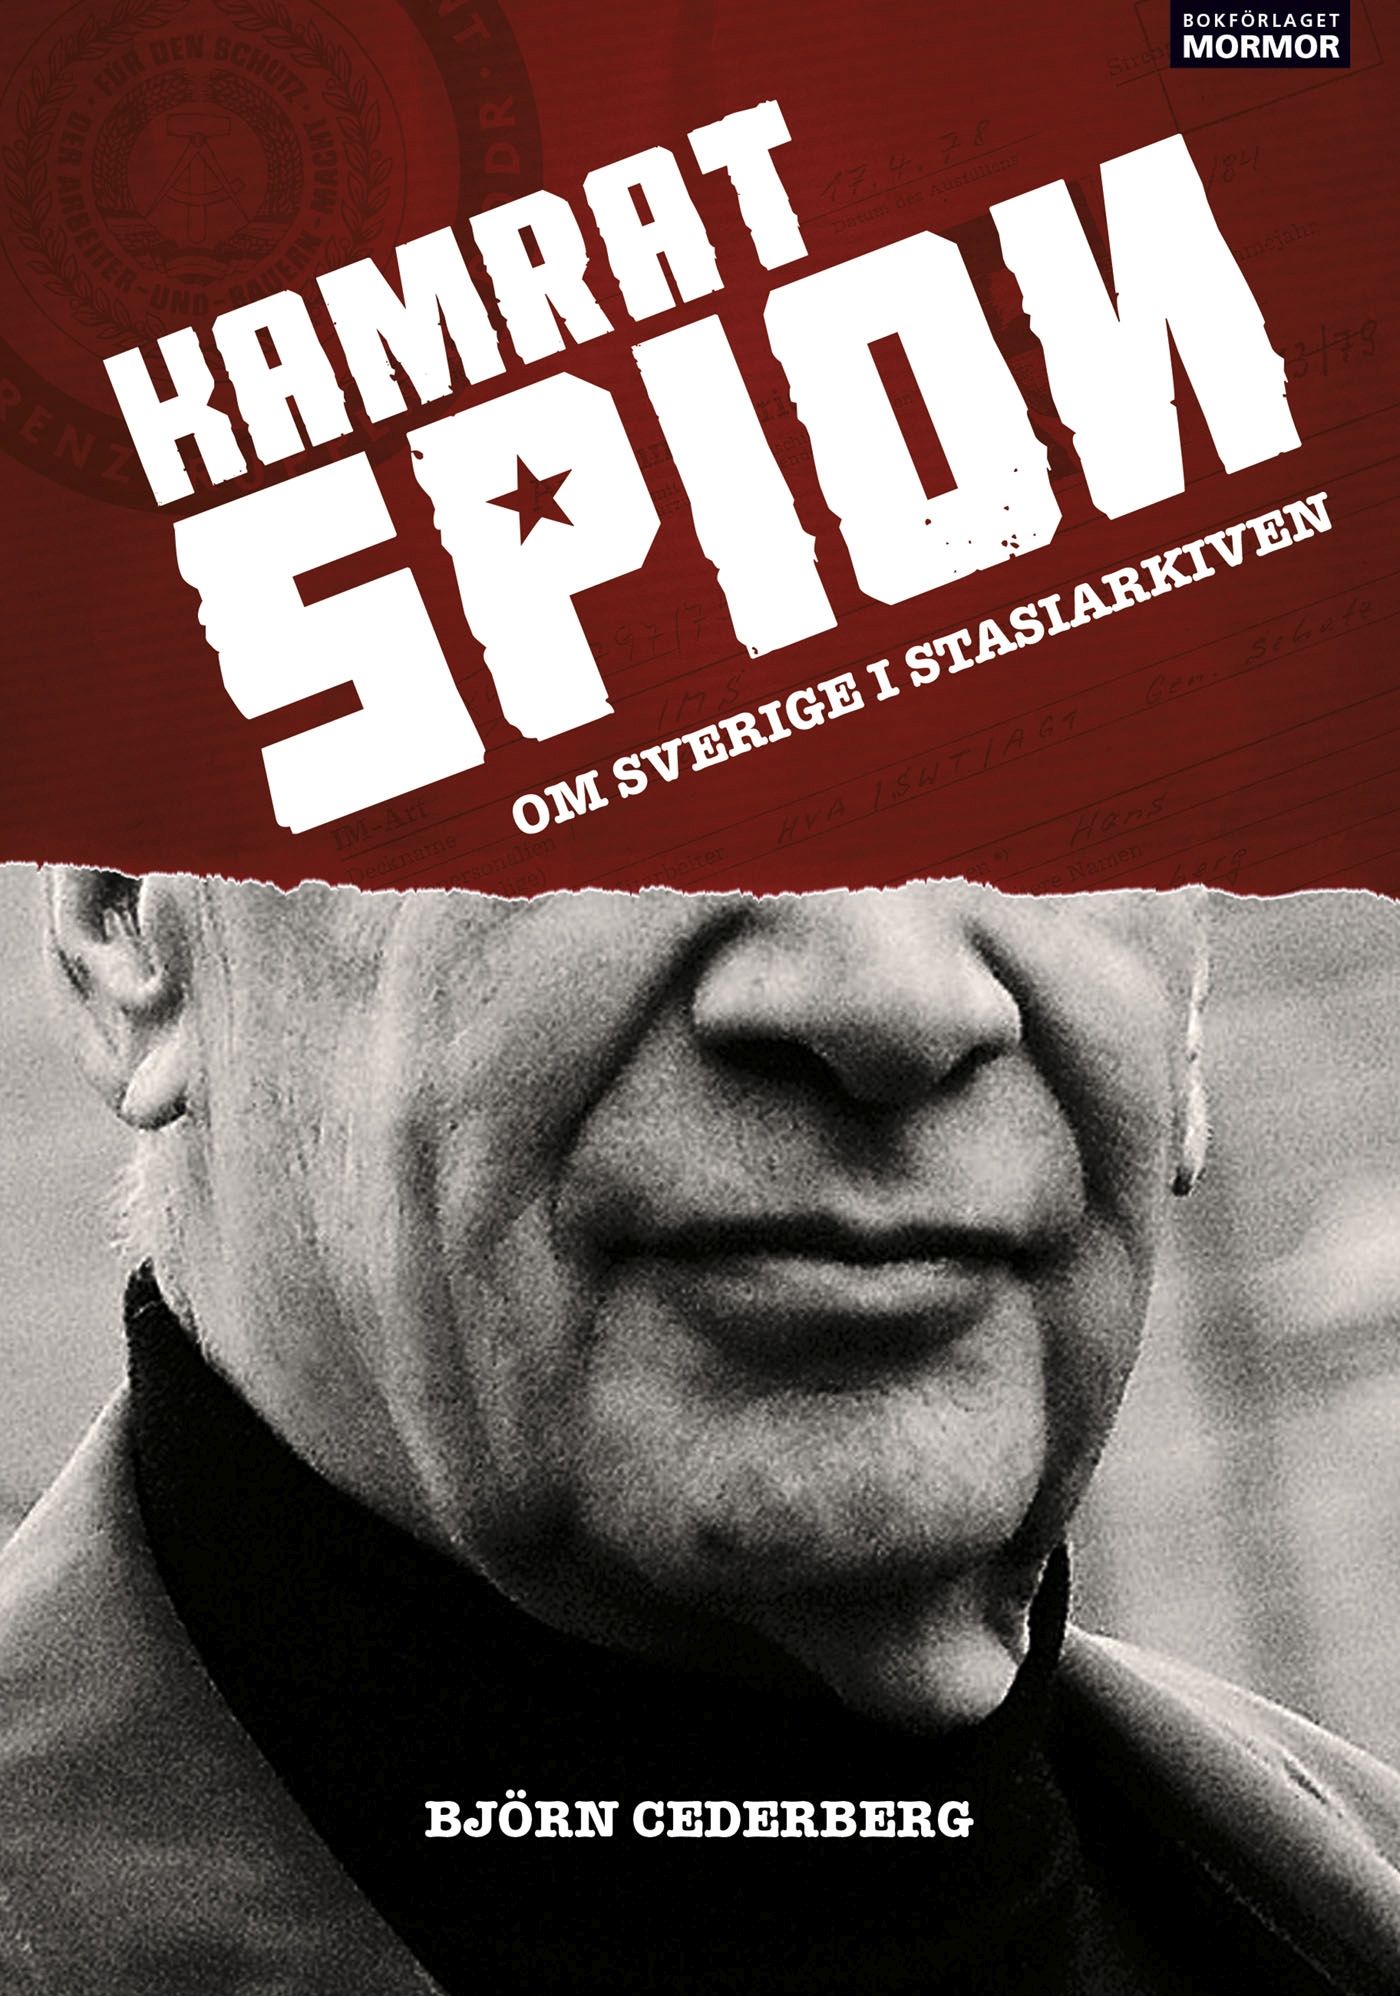 Kamrat, spion - Om Sverige i Stasiarkiven, e-bog af Björn Cederberg